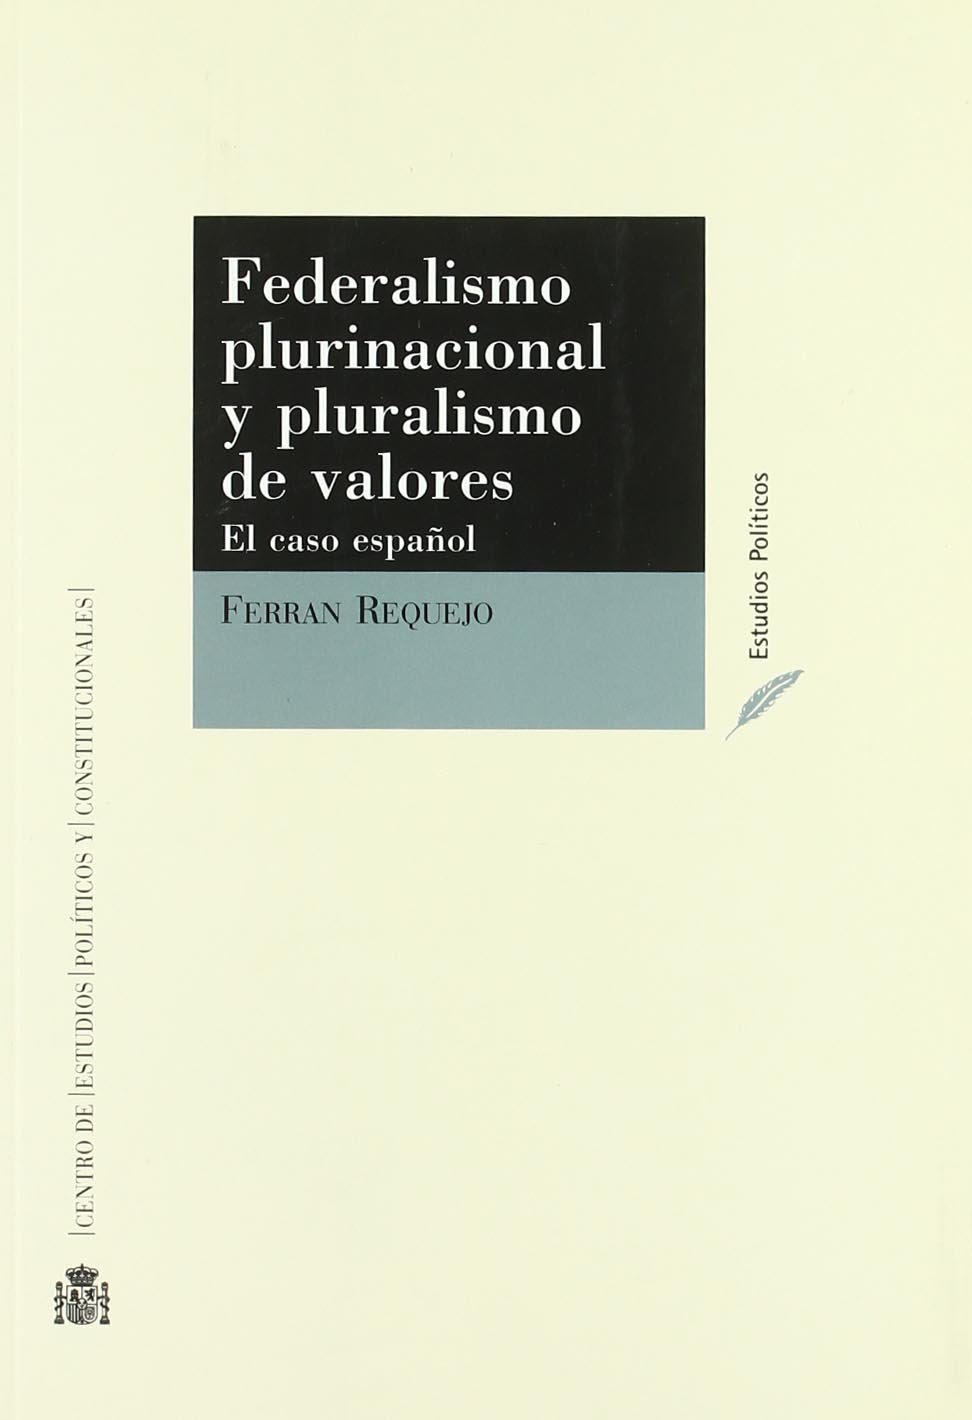 Federalismo plurinacional y pluralismo de valores